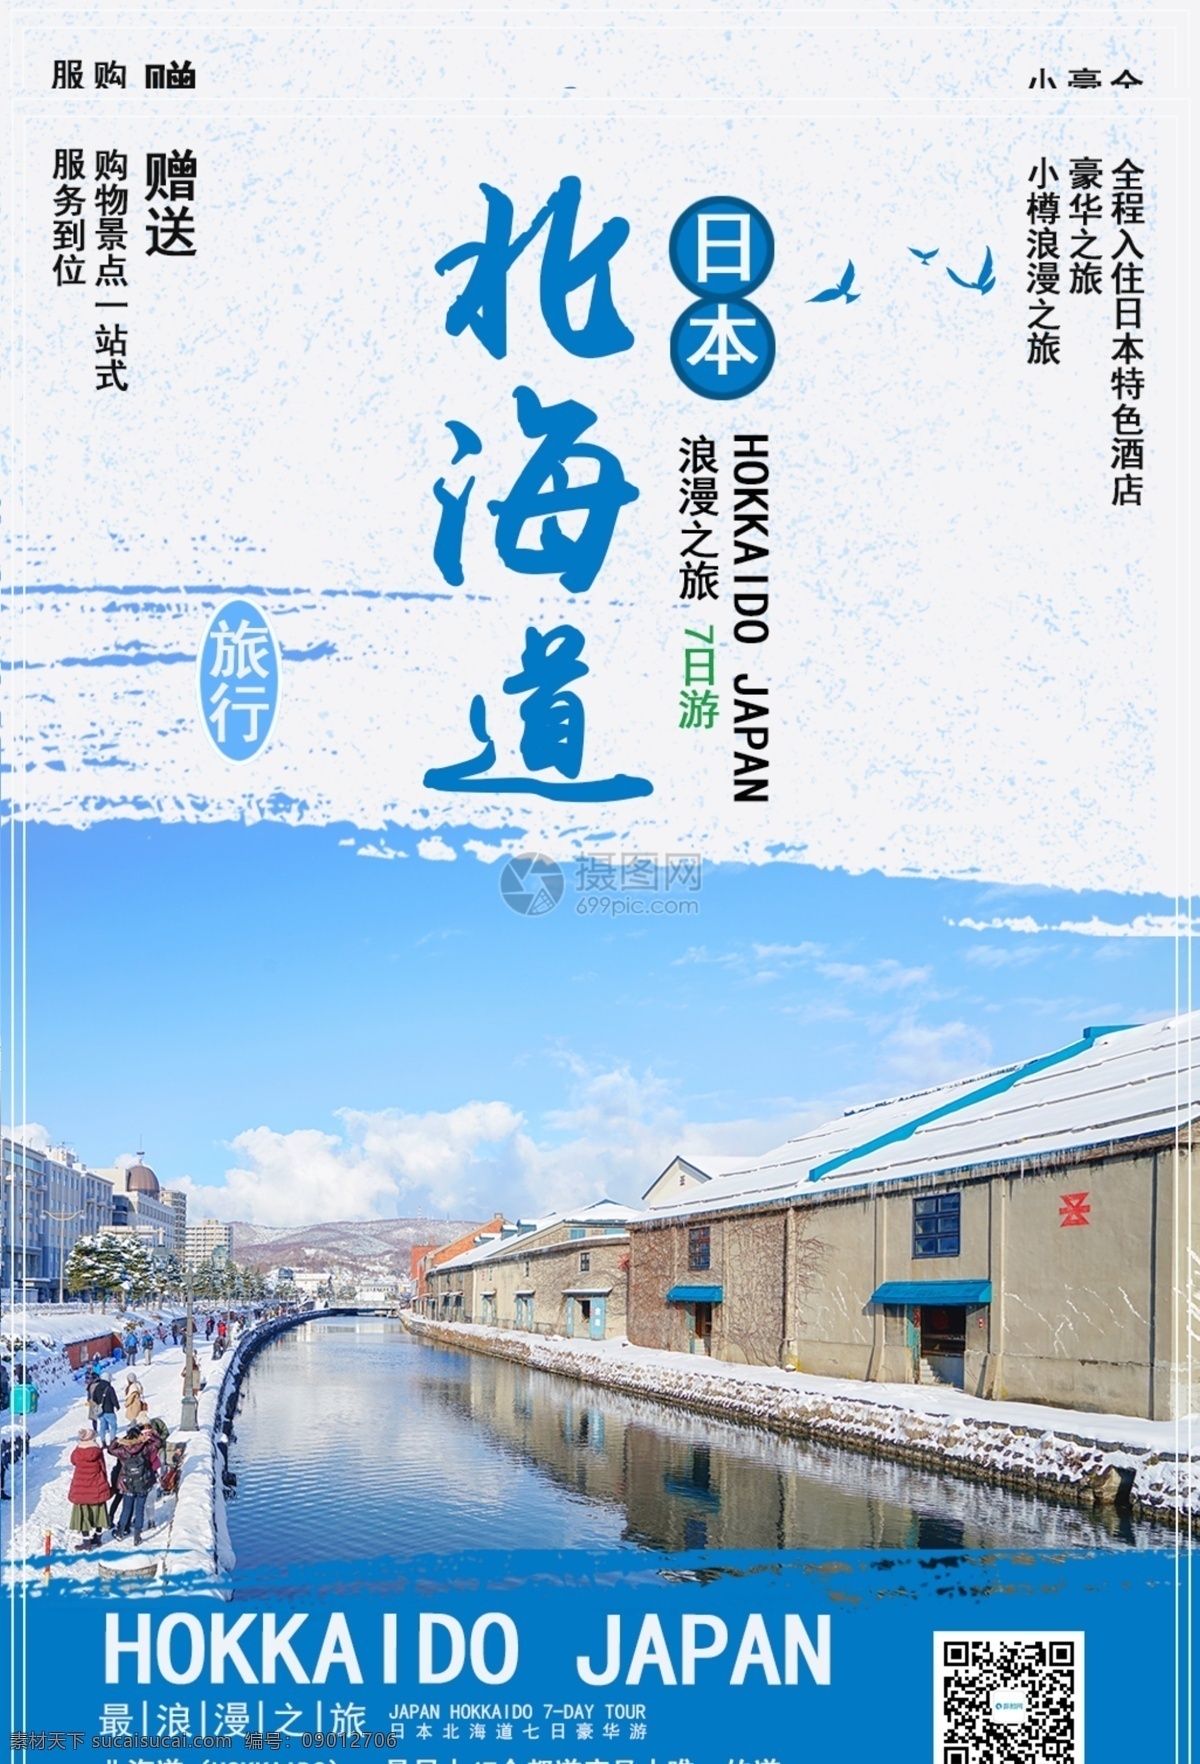 日本 北海道 旅游 小樽 浪漫 蓝色 旅行 旅途 著名景点 景区 国外游 出境游 海岛游 旅行社 旅行团 跟团游 旅游海报 毕业旅行